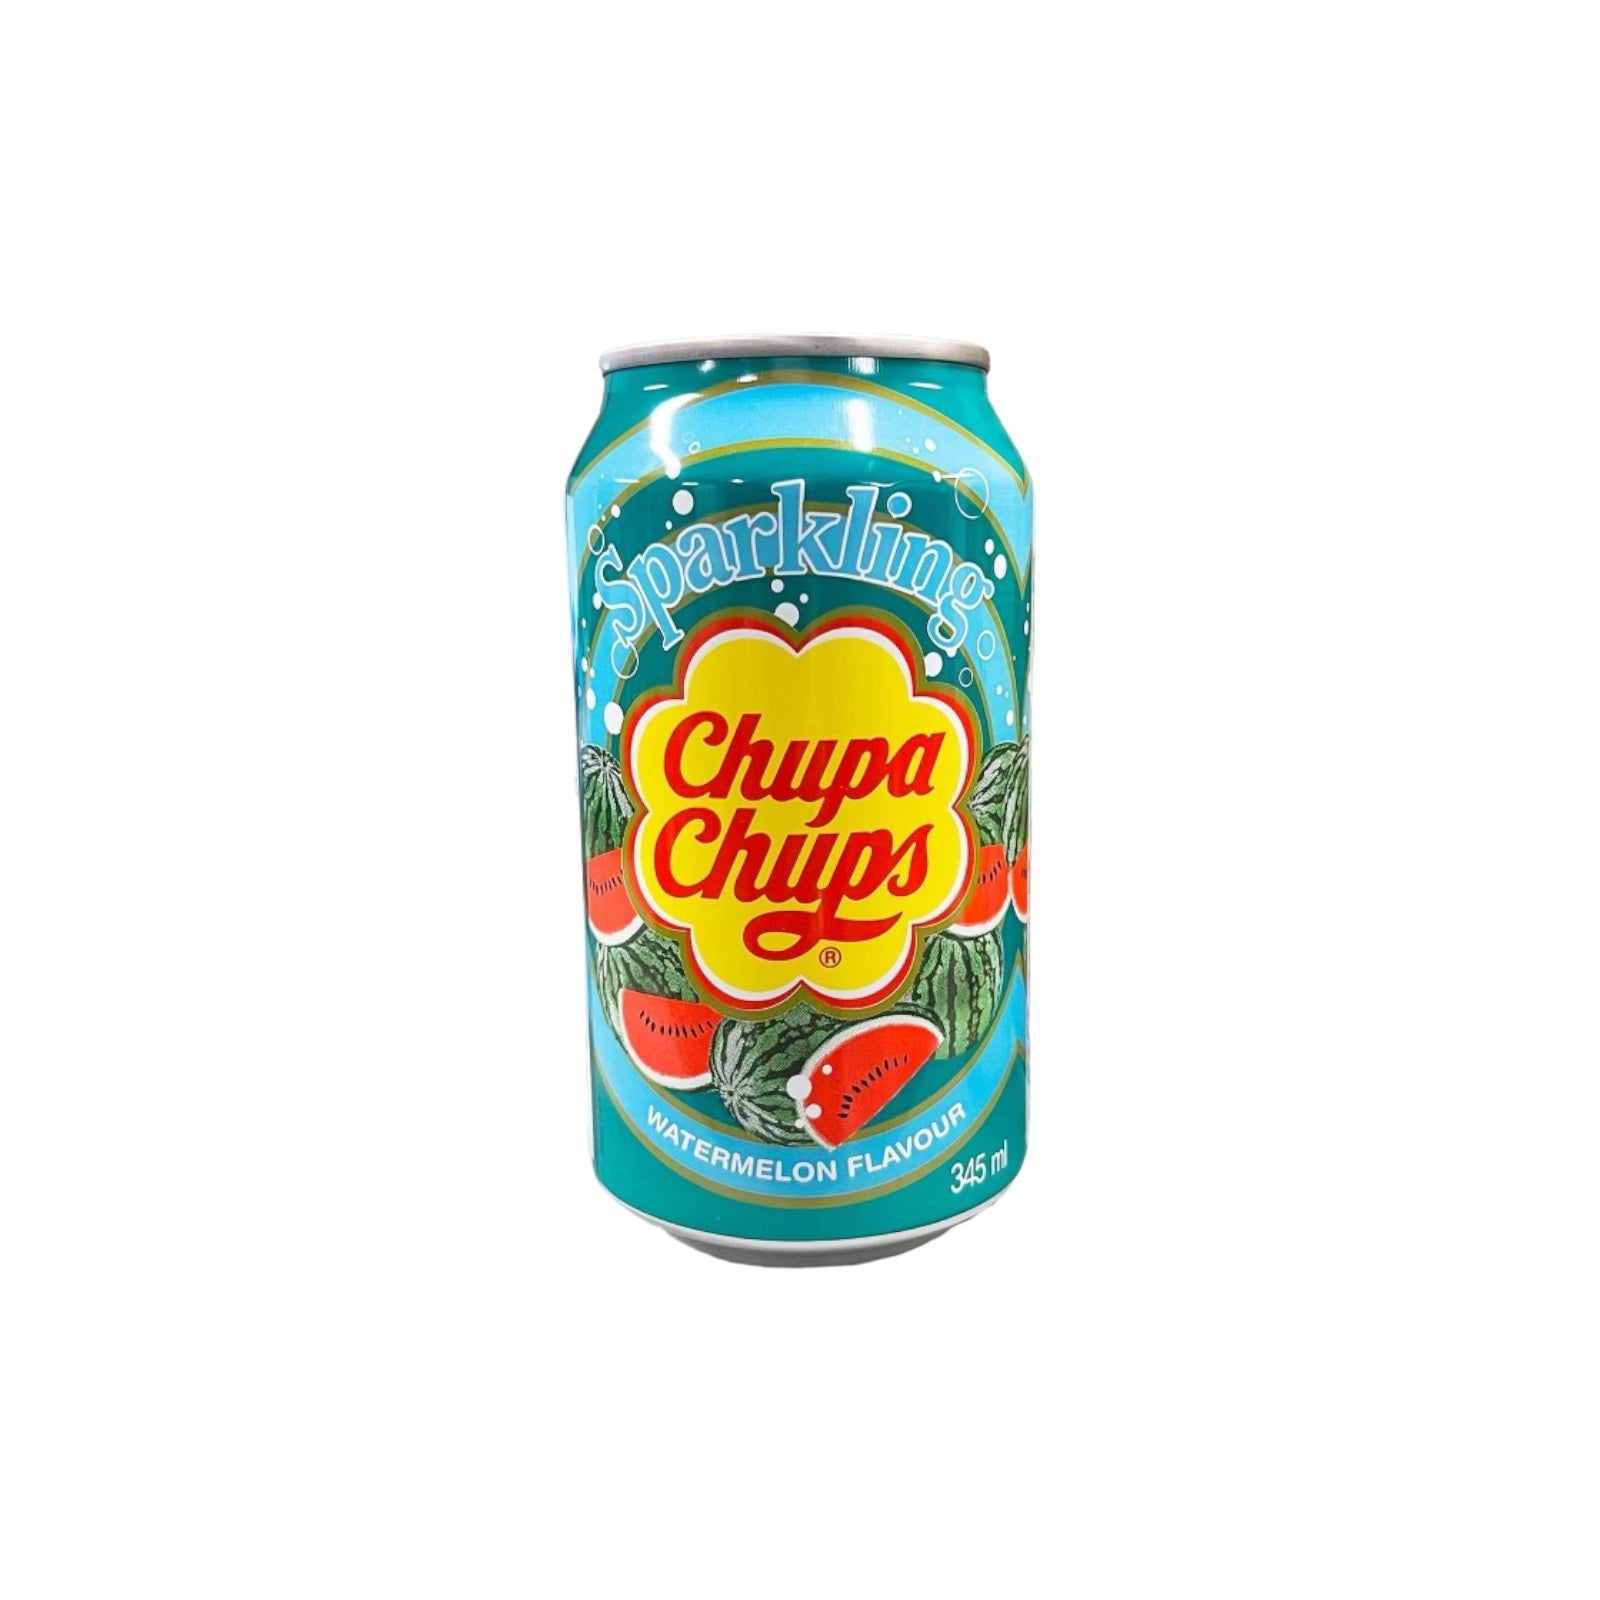 Chupa Chups Soda Watermelon Flavour 345ml